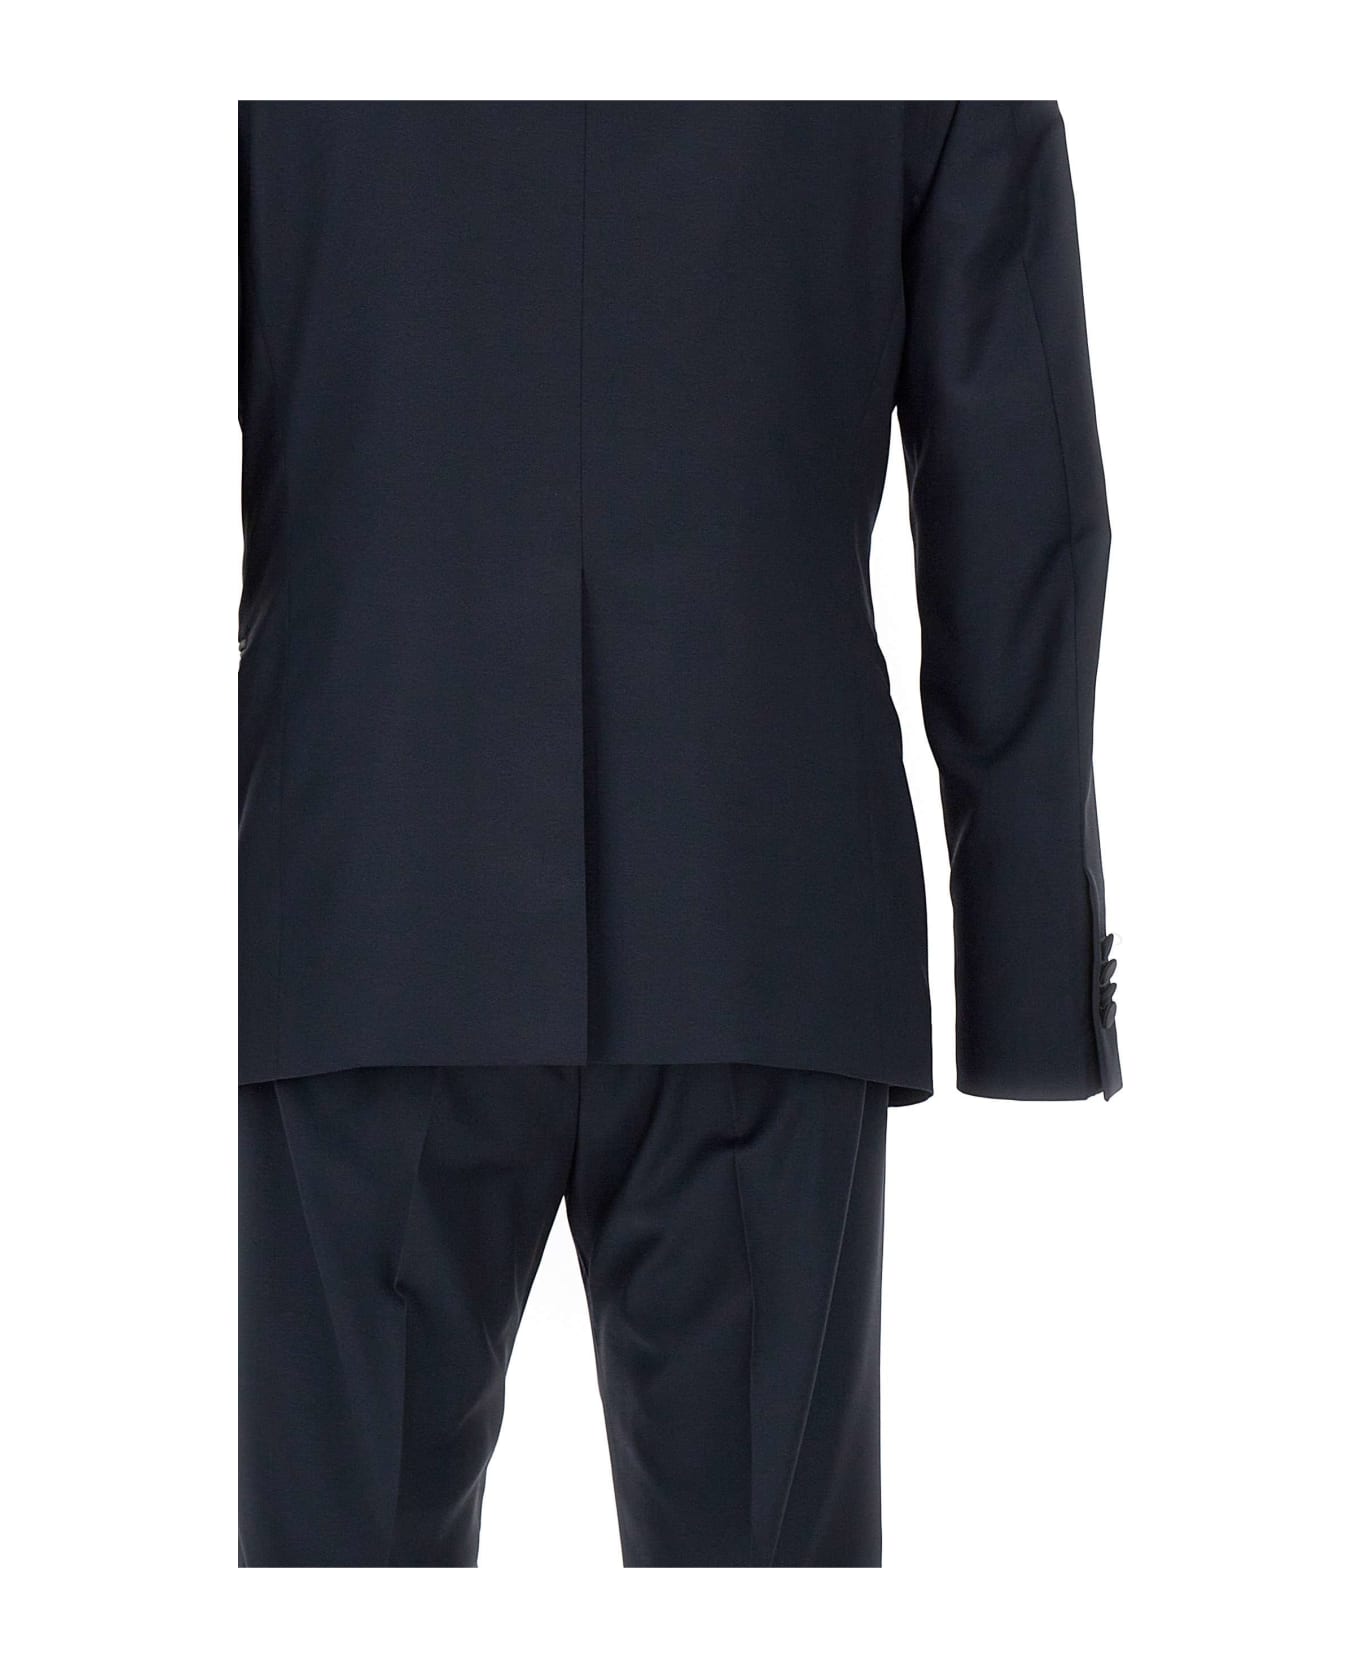 Tagliatore Three-piece Suit - BLUE